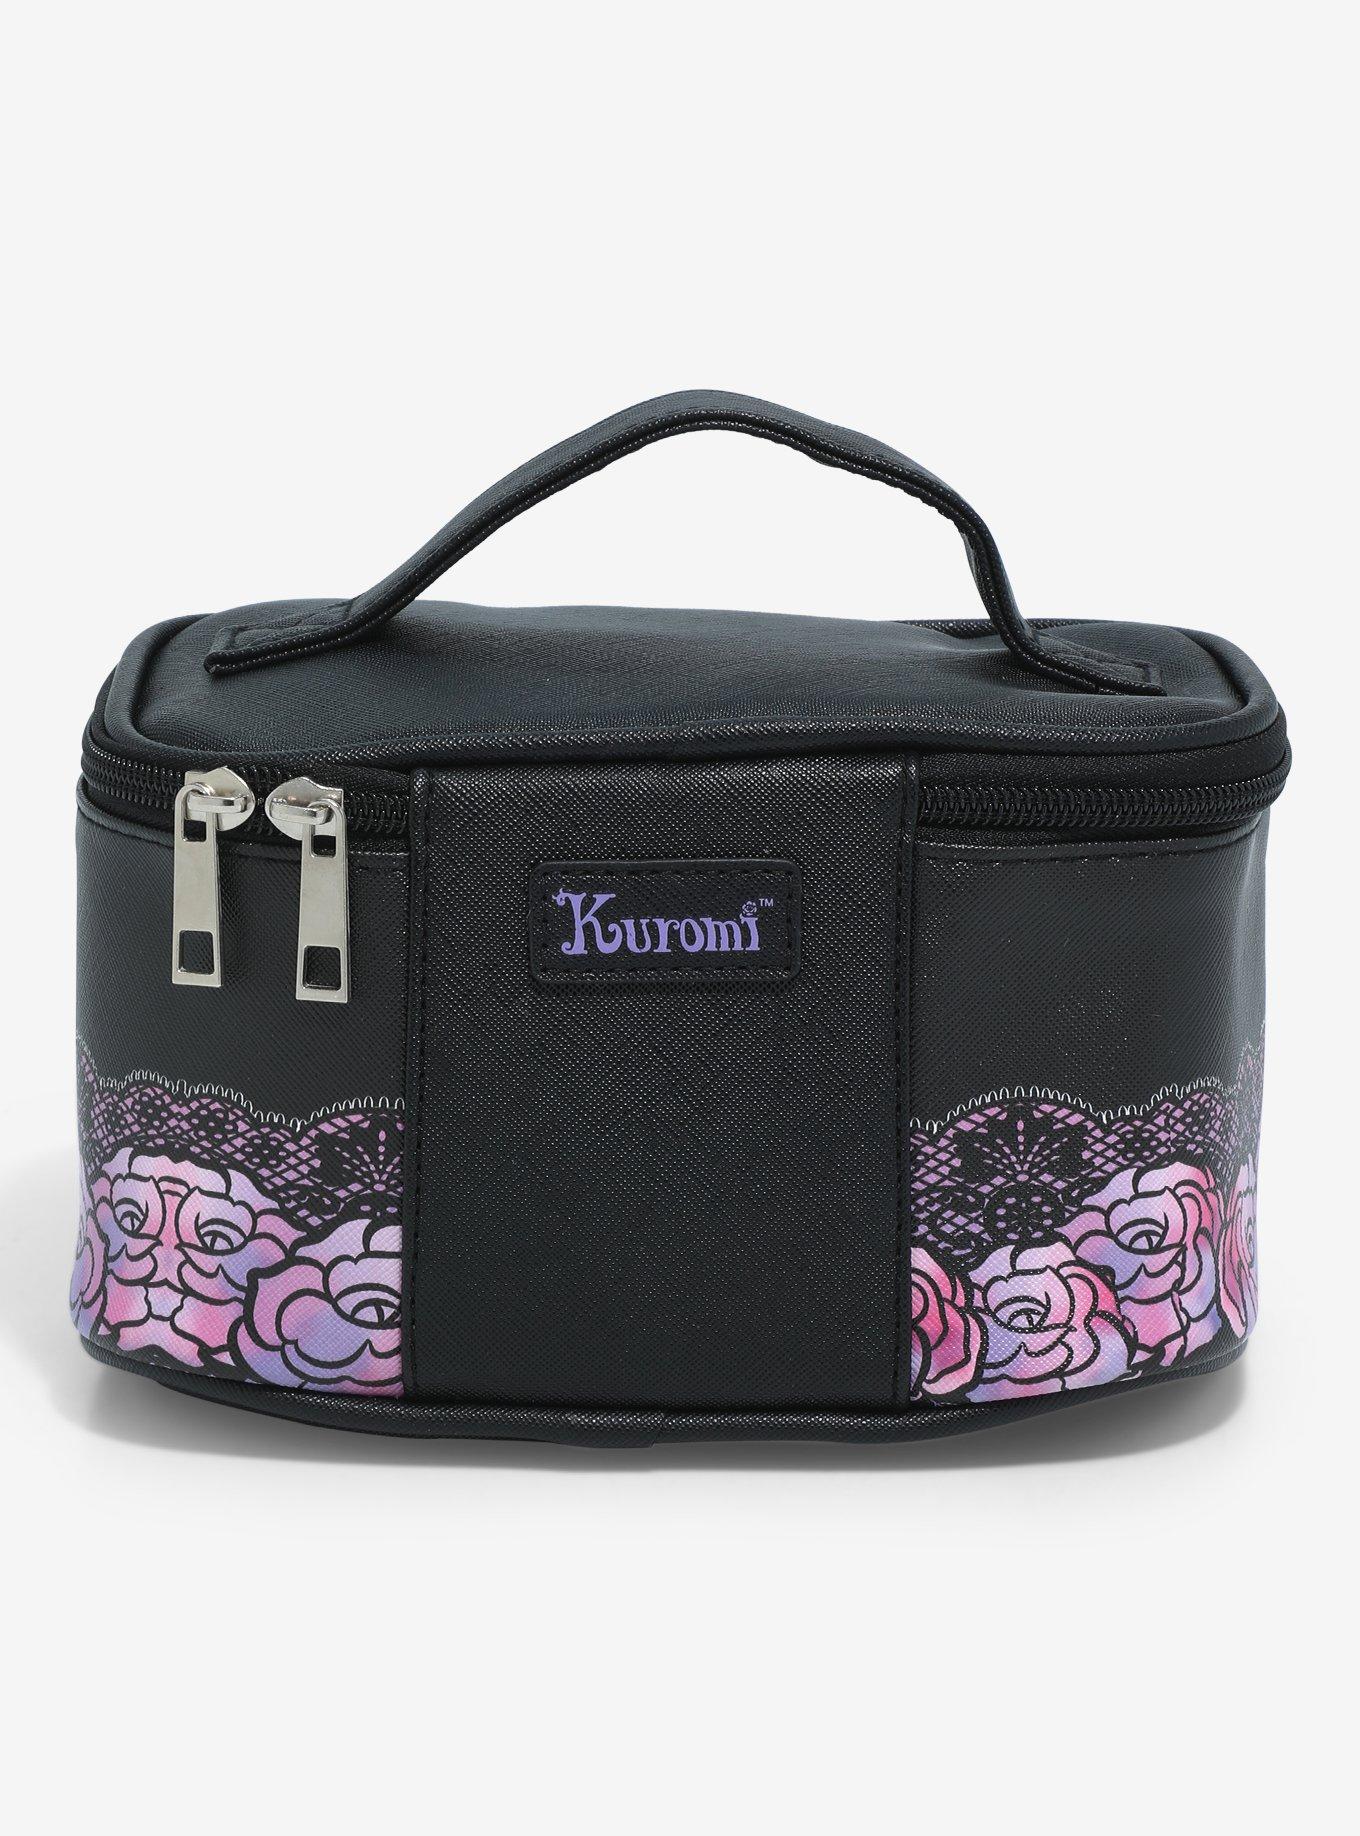 Kuromi Butterfly Roses Makeup Bag